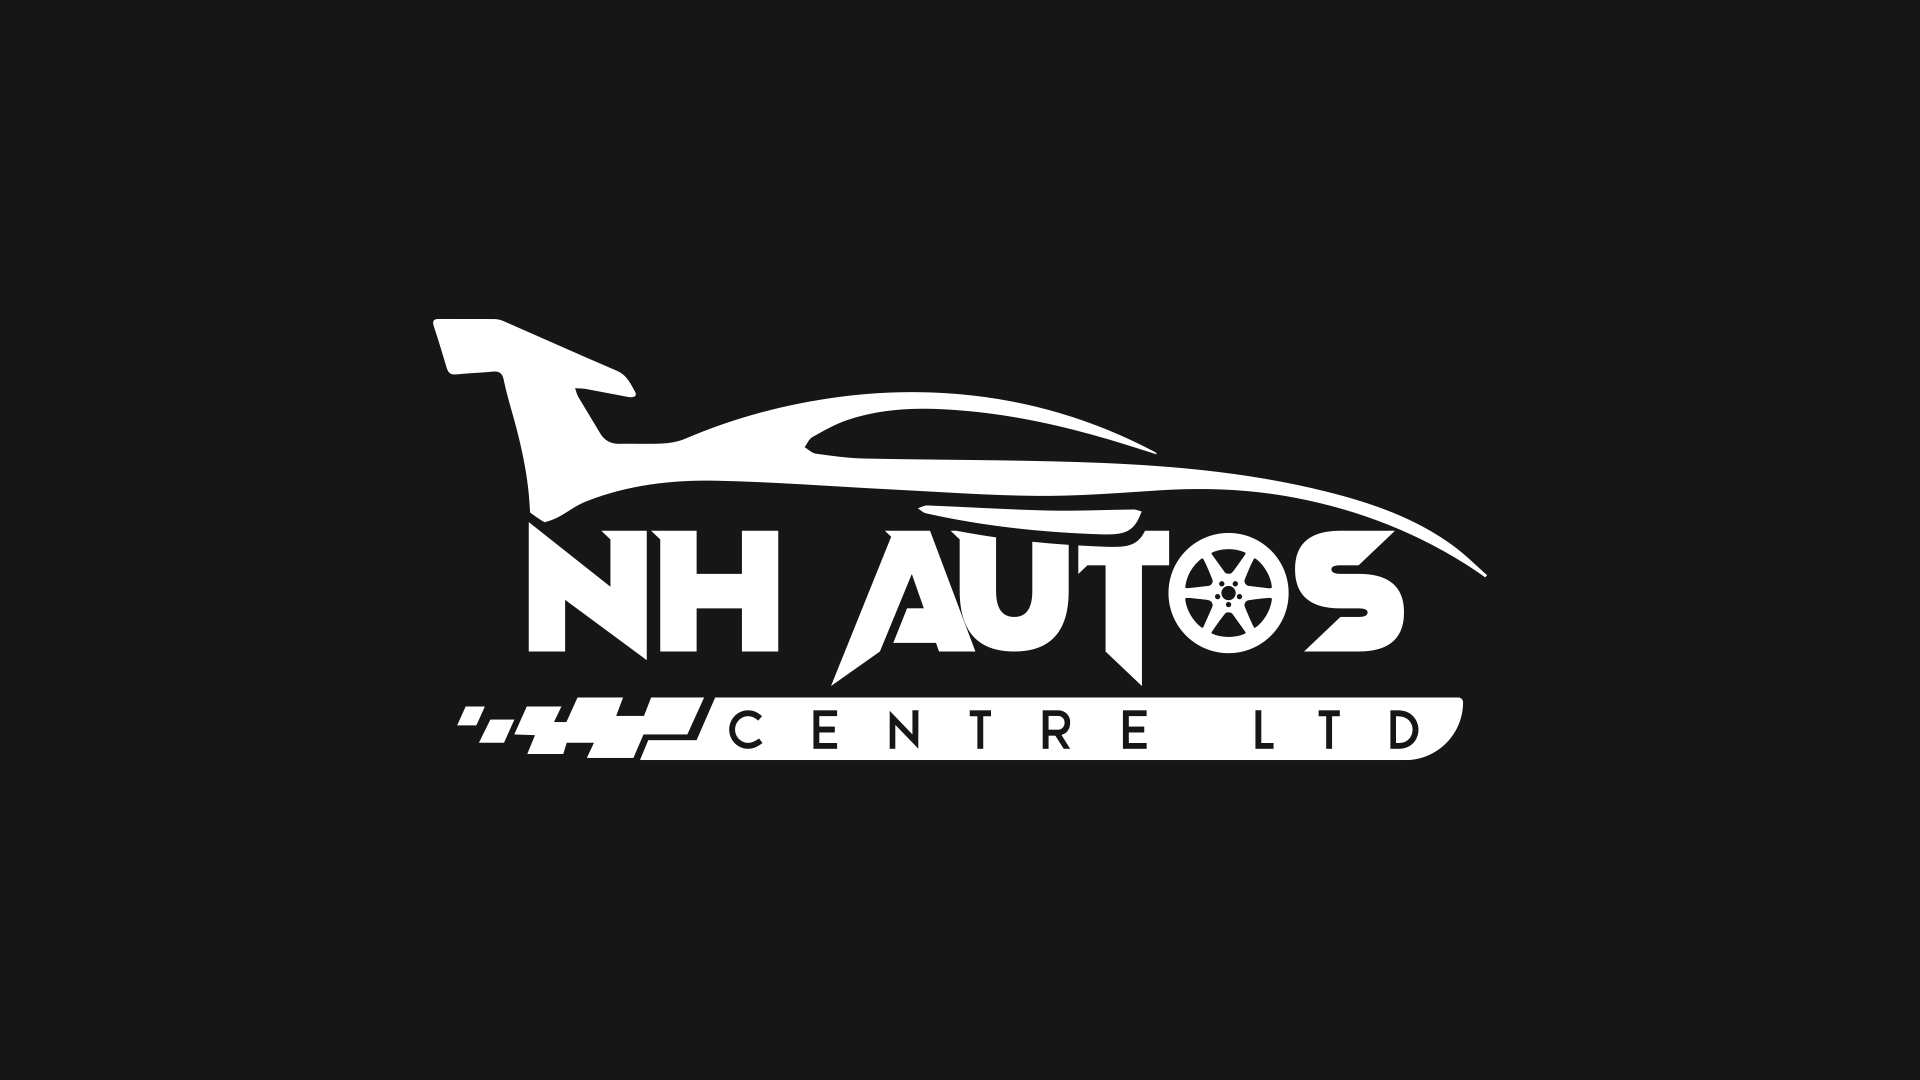 NH AUTO CENTRE LTD logo